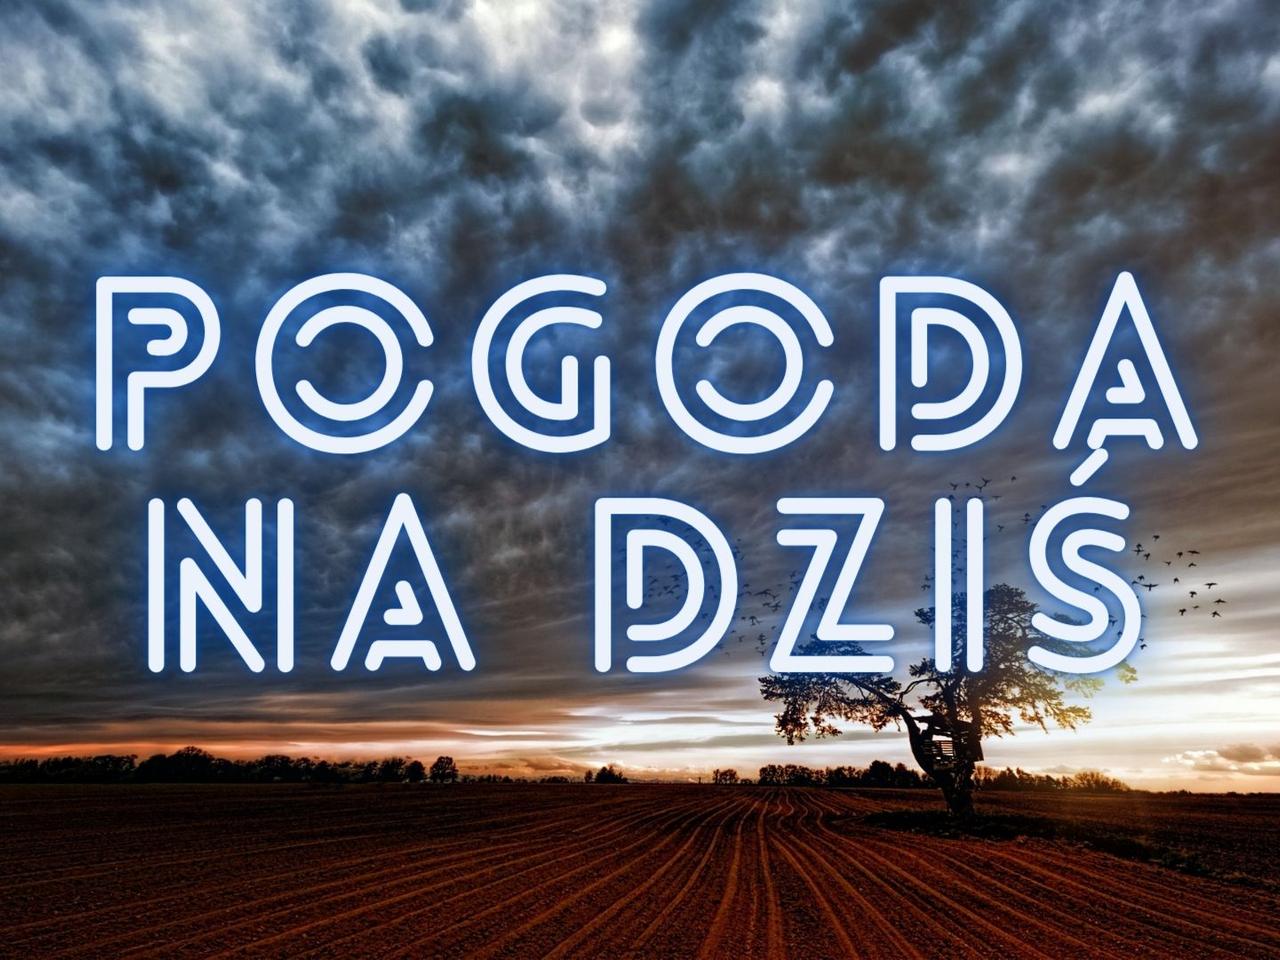 POGODA: Szczecin, Koszalin i Szczecinek. Jaka pogoda na Pomorzu Zachodnim w środę, 19 maja?